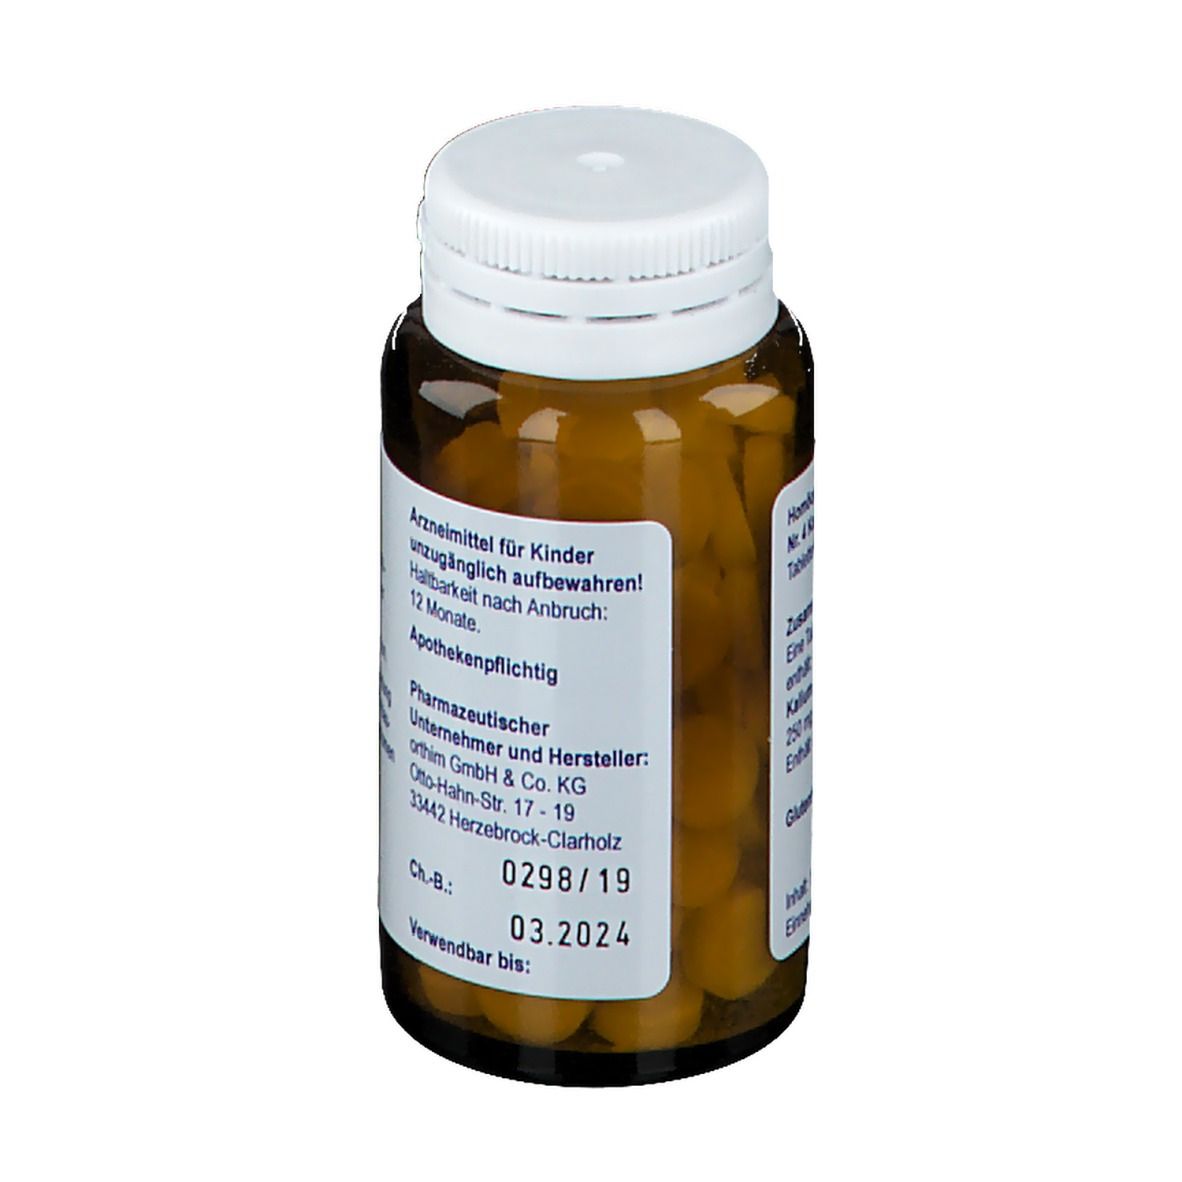 Biochemie orthim® Nr. 4 Kalium chloratum D6